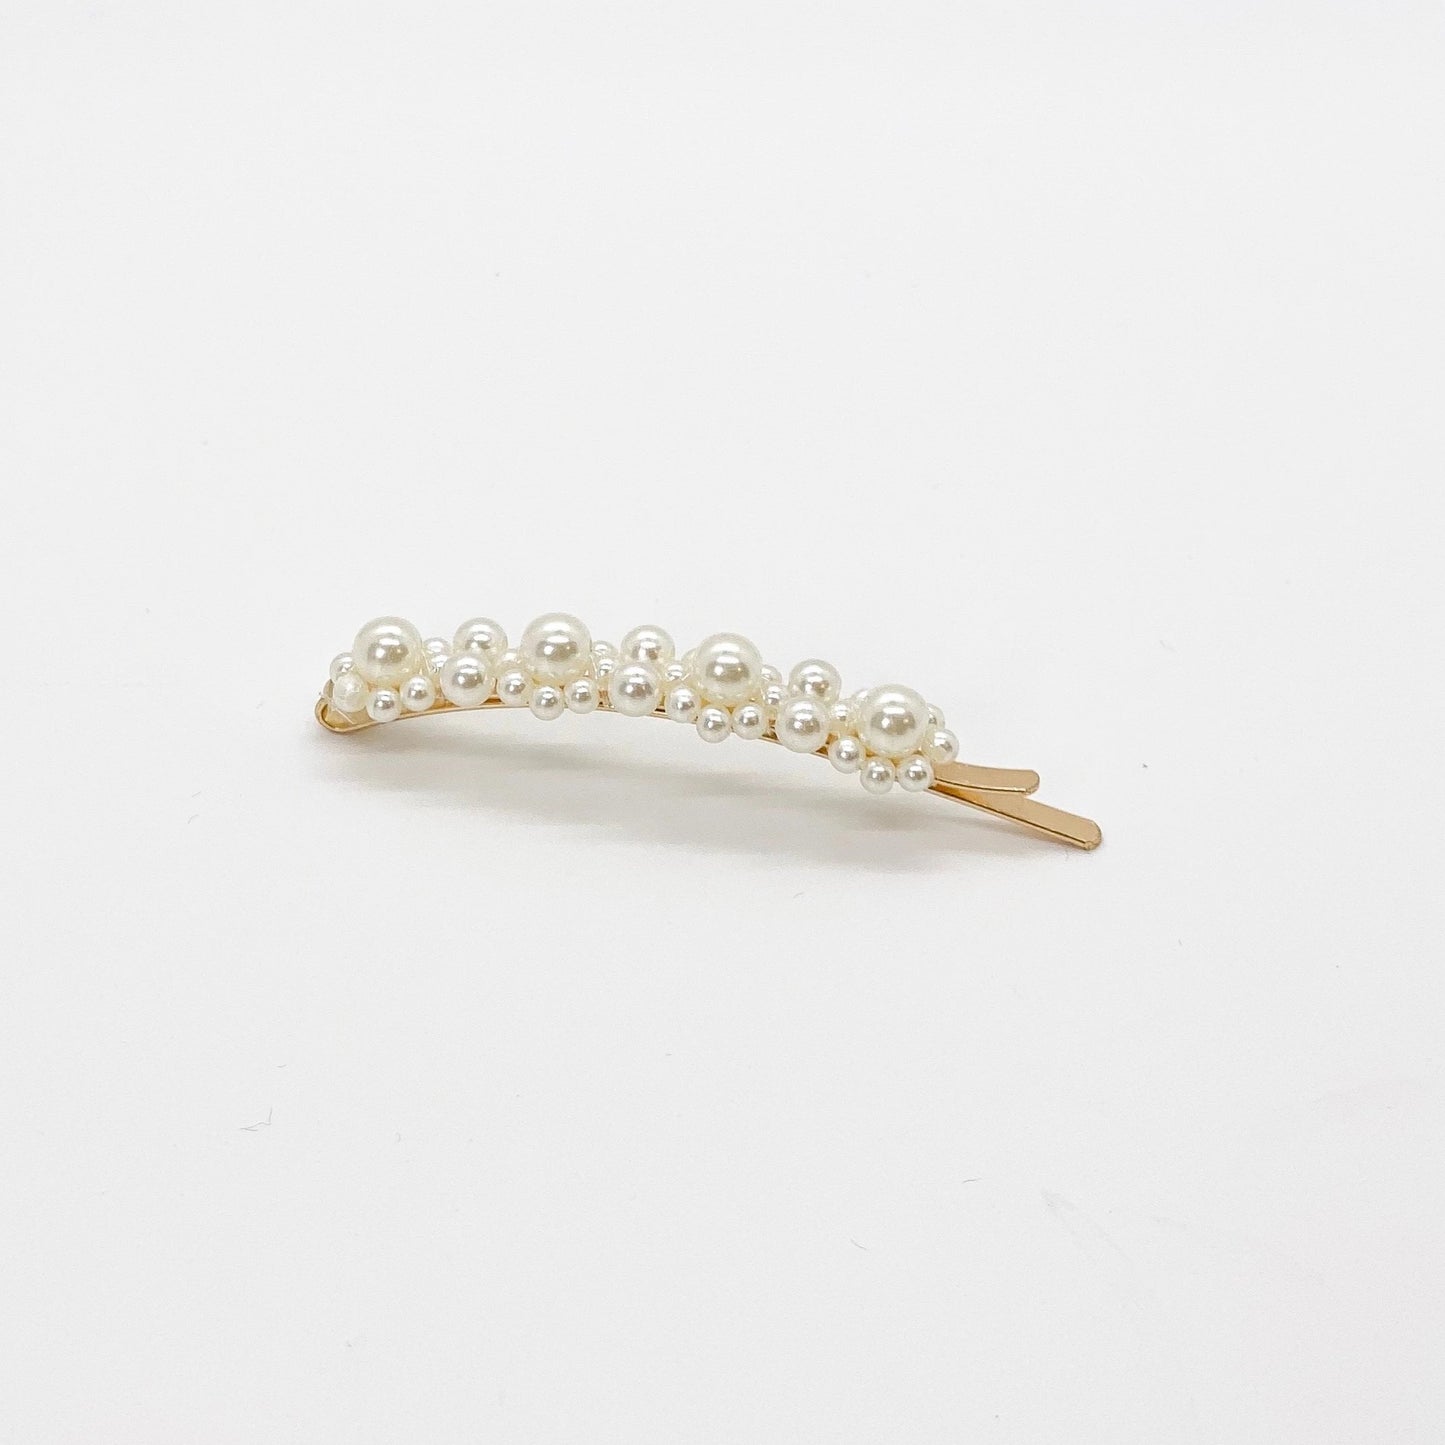 pearl hair clips